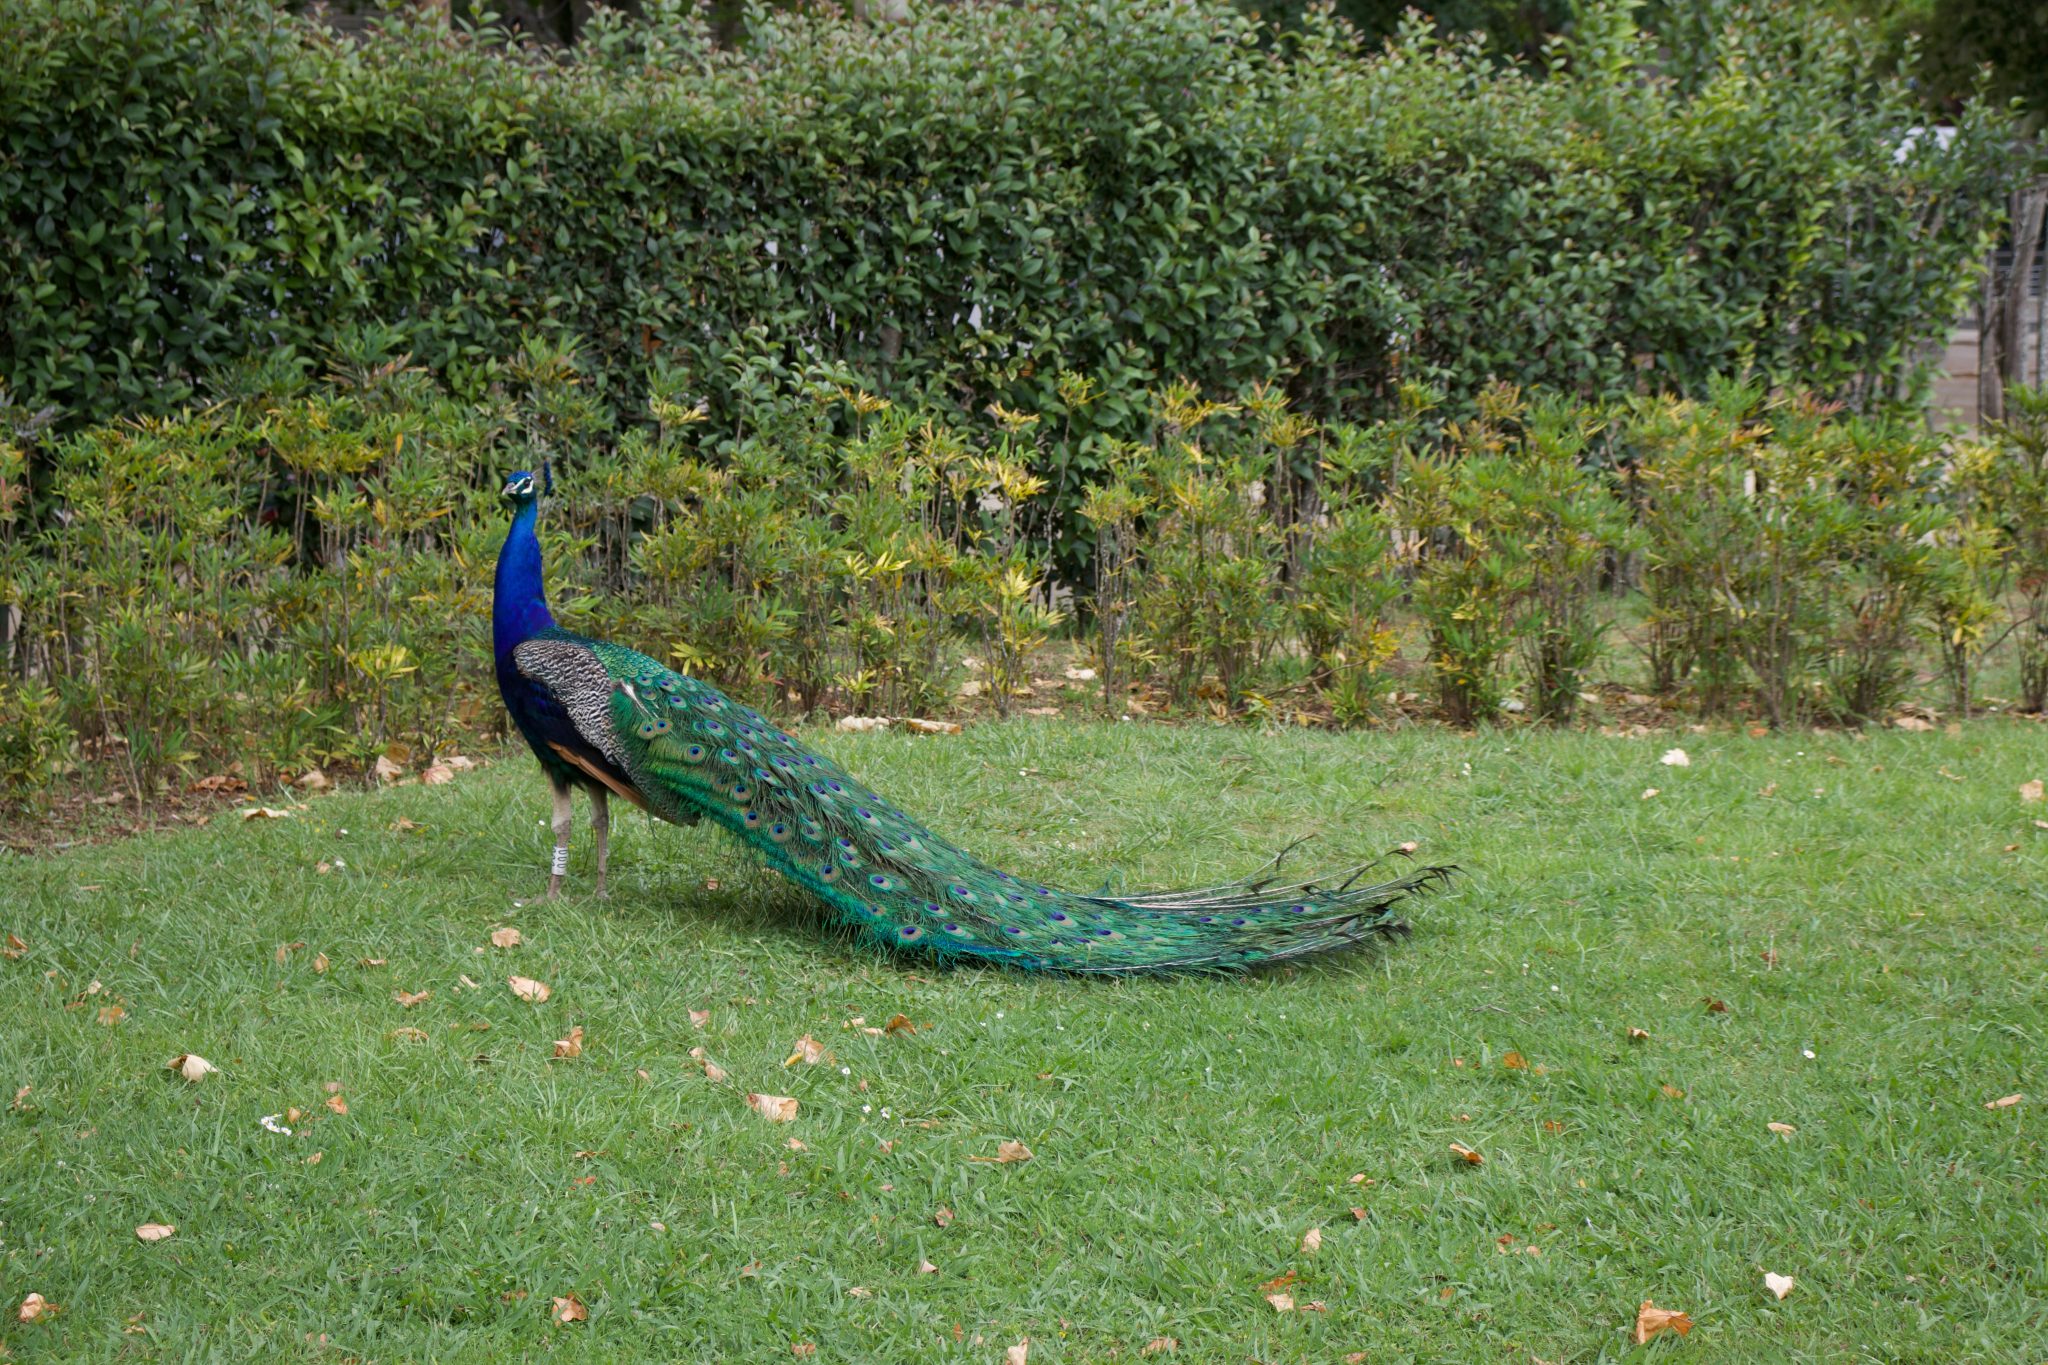 Peacock at the Super Bock in Porto, Portugal